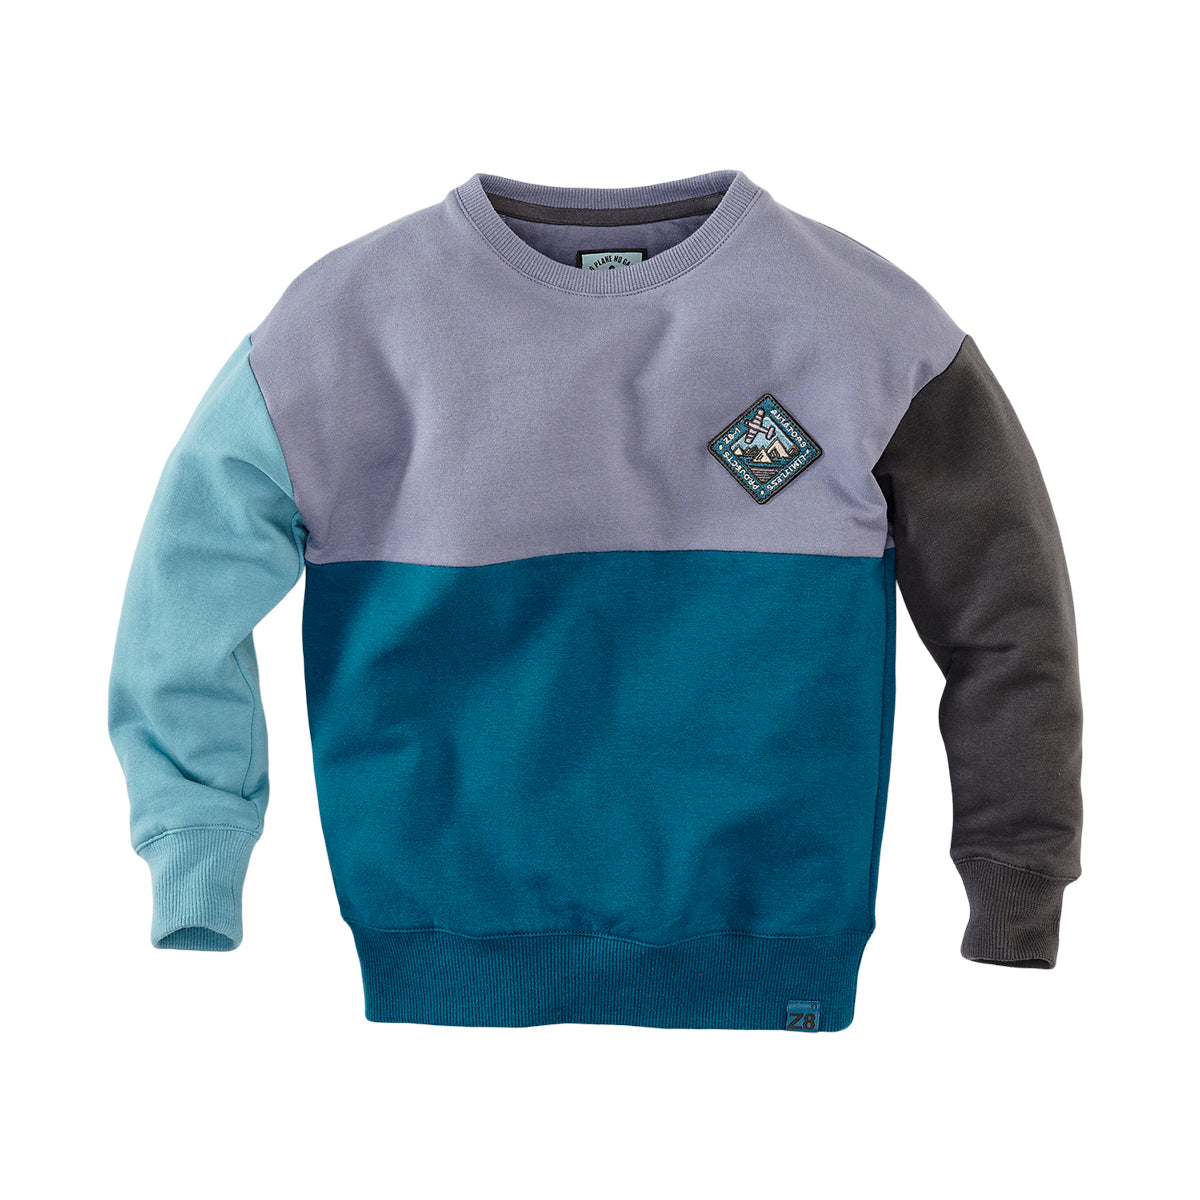 Jongens Sweater Adino van Z8 in de kleur Frosty lavender in maat 140-146.